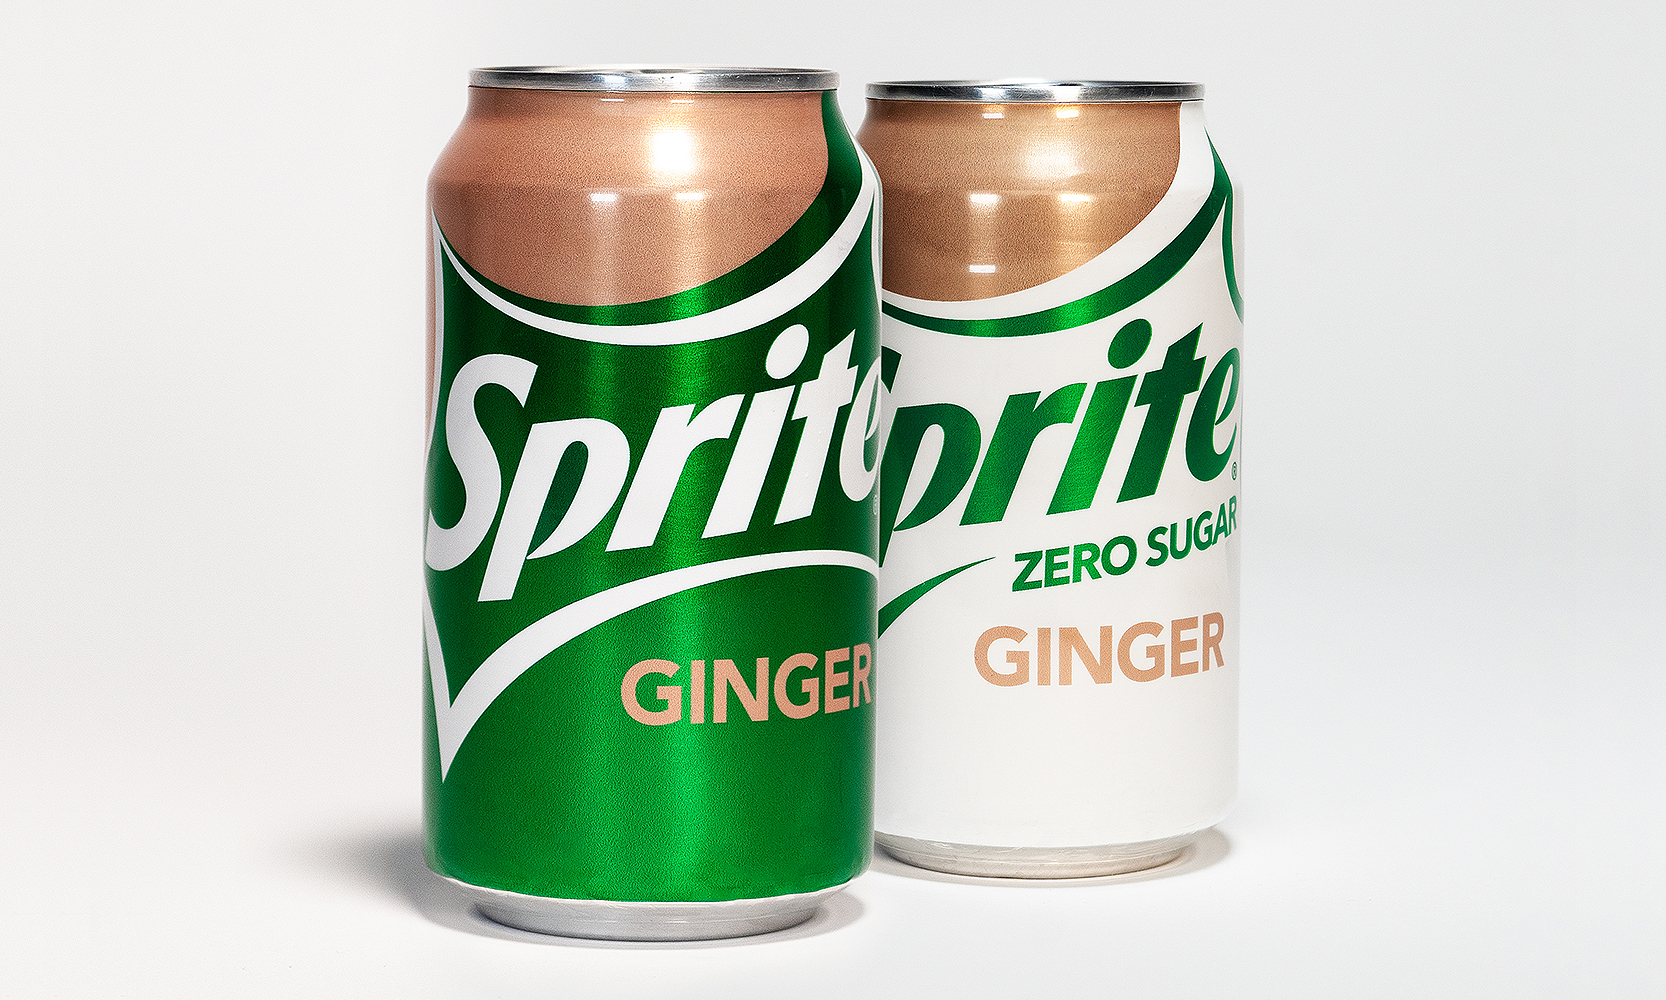 可口可乐公司推出全新 Sprite Ginger 口味饮料